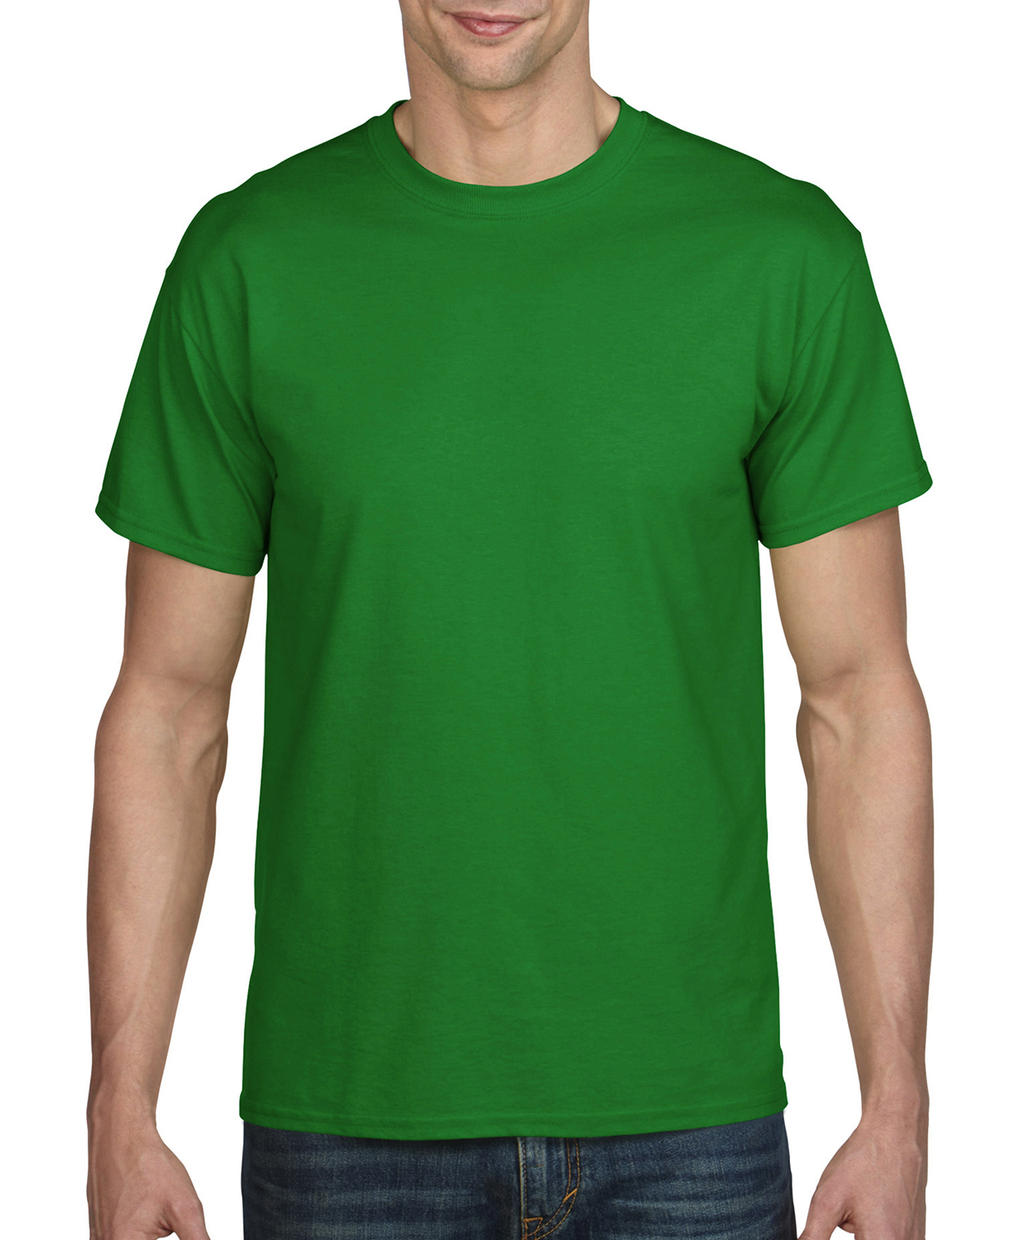  DryBlend? Adult T-Shirt in Farbe Irish Green